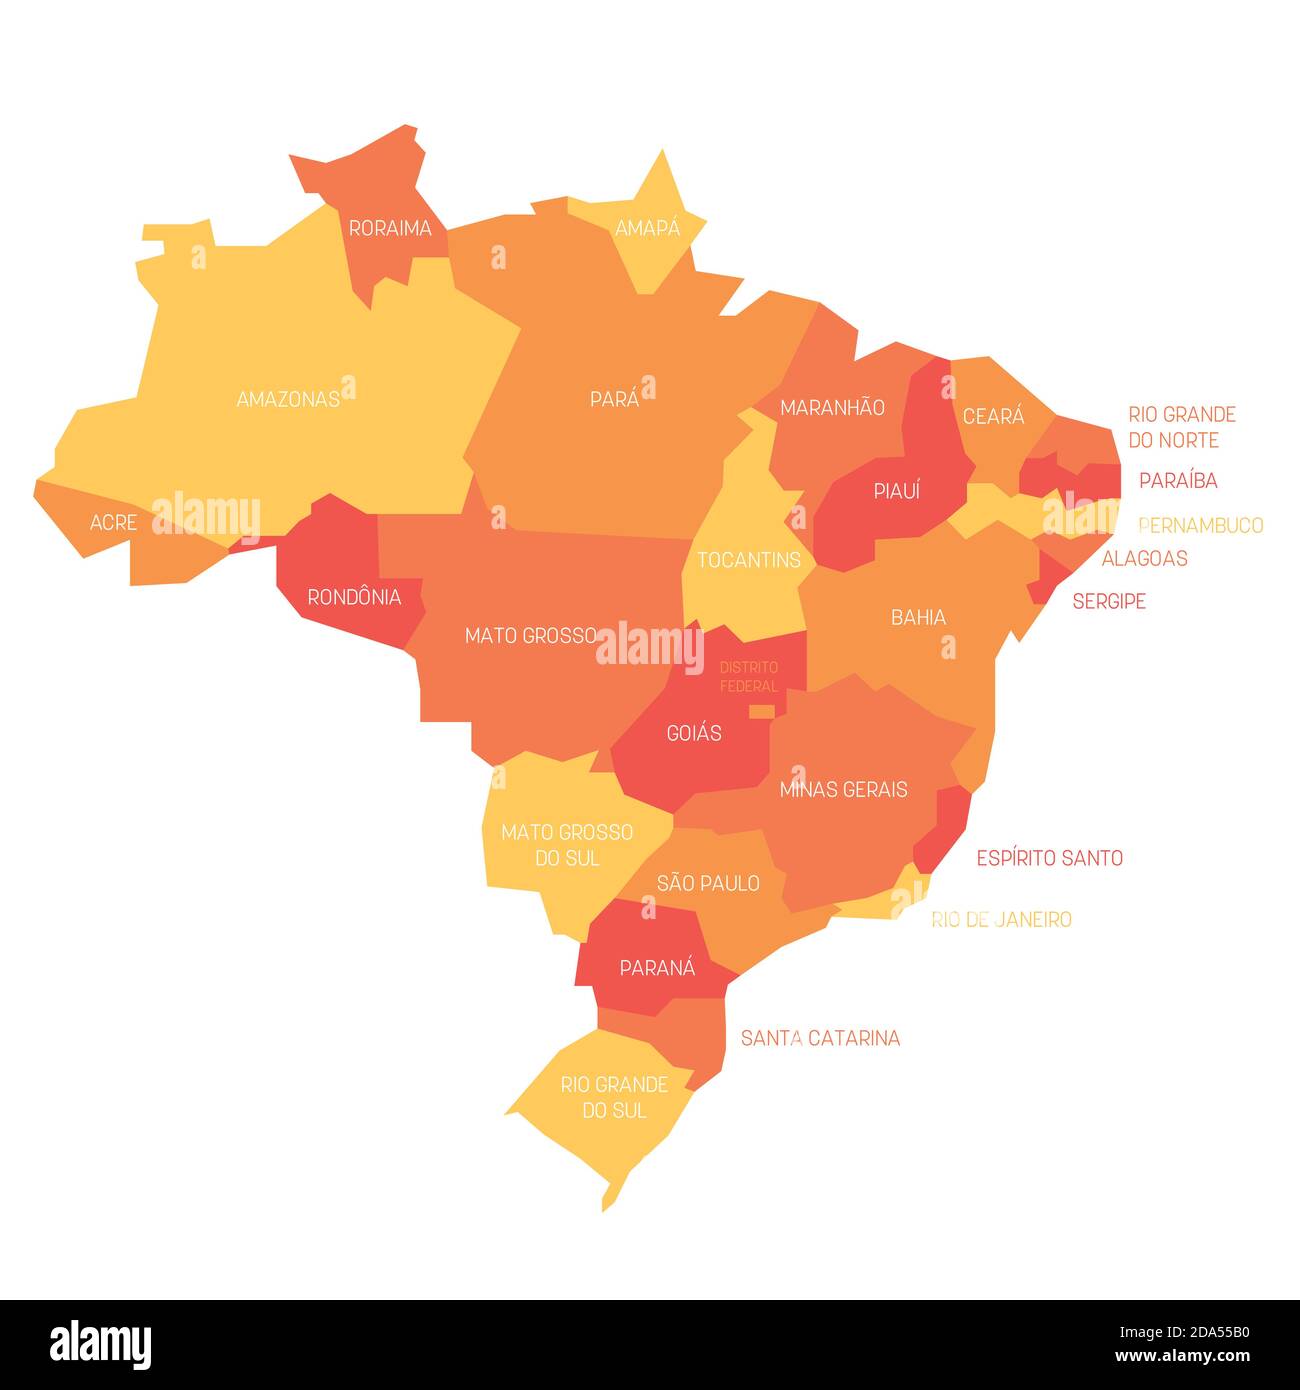 Orangefarbene politische Landkarte von Brasilien. Verwaltungsabteilungen - Staaten. Einfache flache Vektorkarte mit Beschriftungen. Stock Vektor